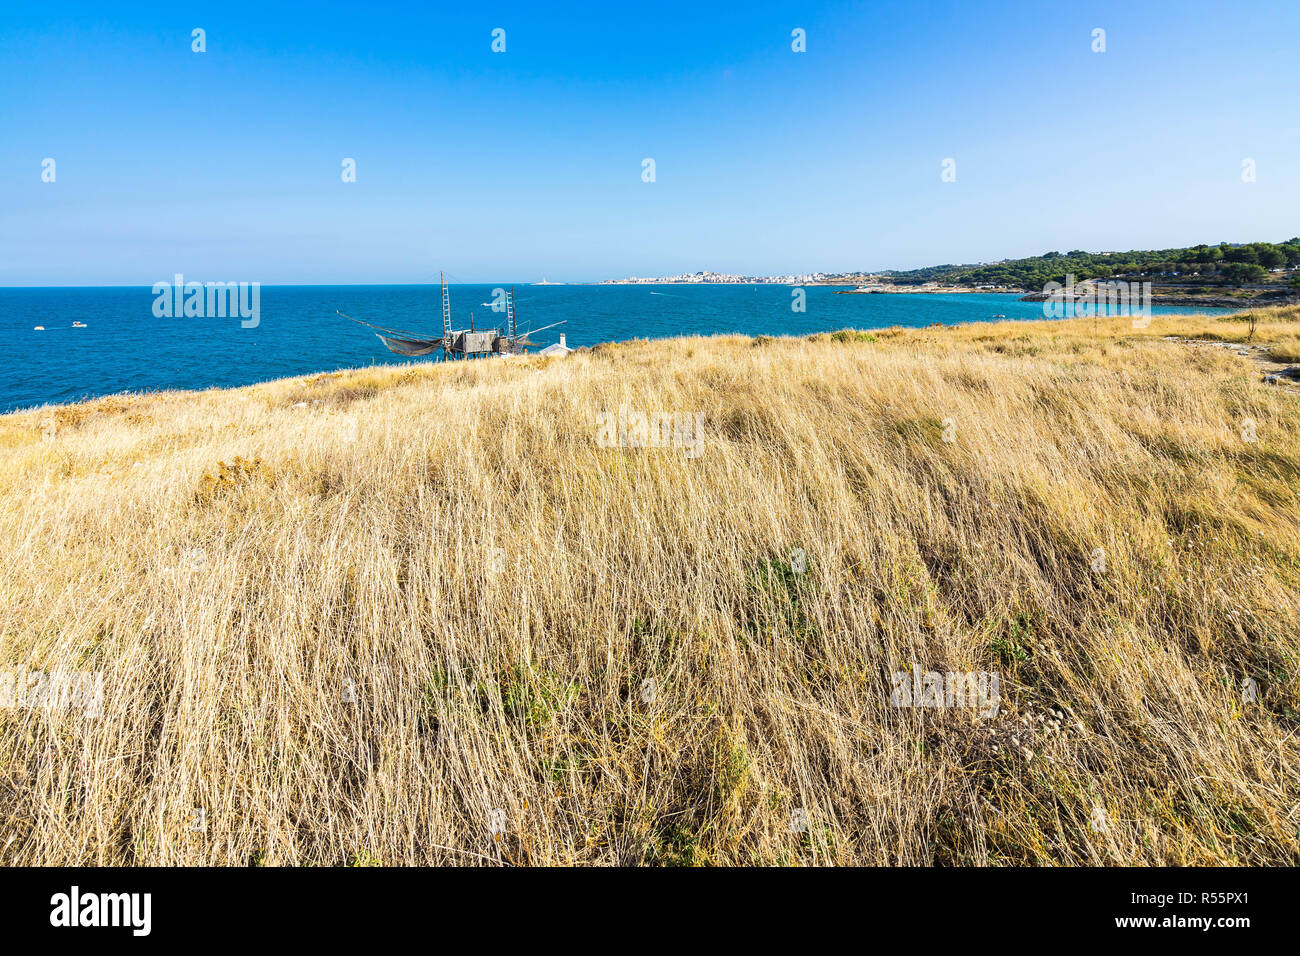 Seascape magnifique près de Molinella Beach avec un trabucco et la ville de Vieste sur le premier plan, Pouilles, Italie Banque D'Images